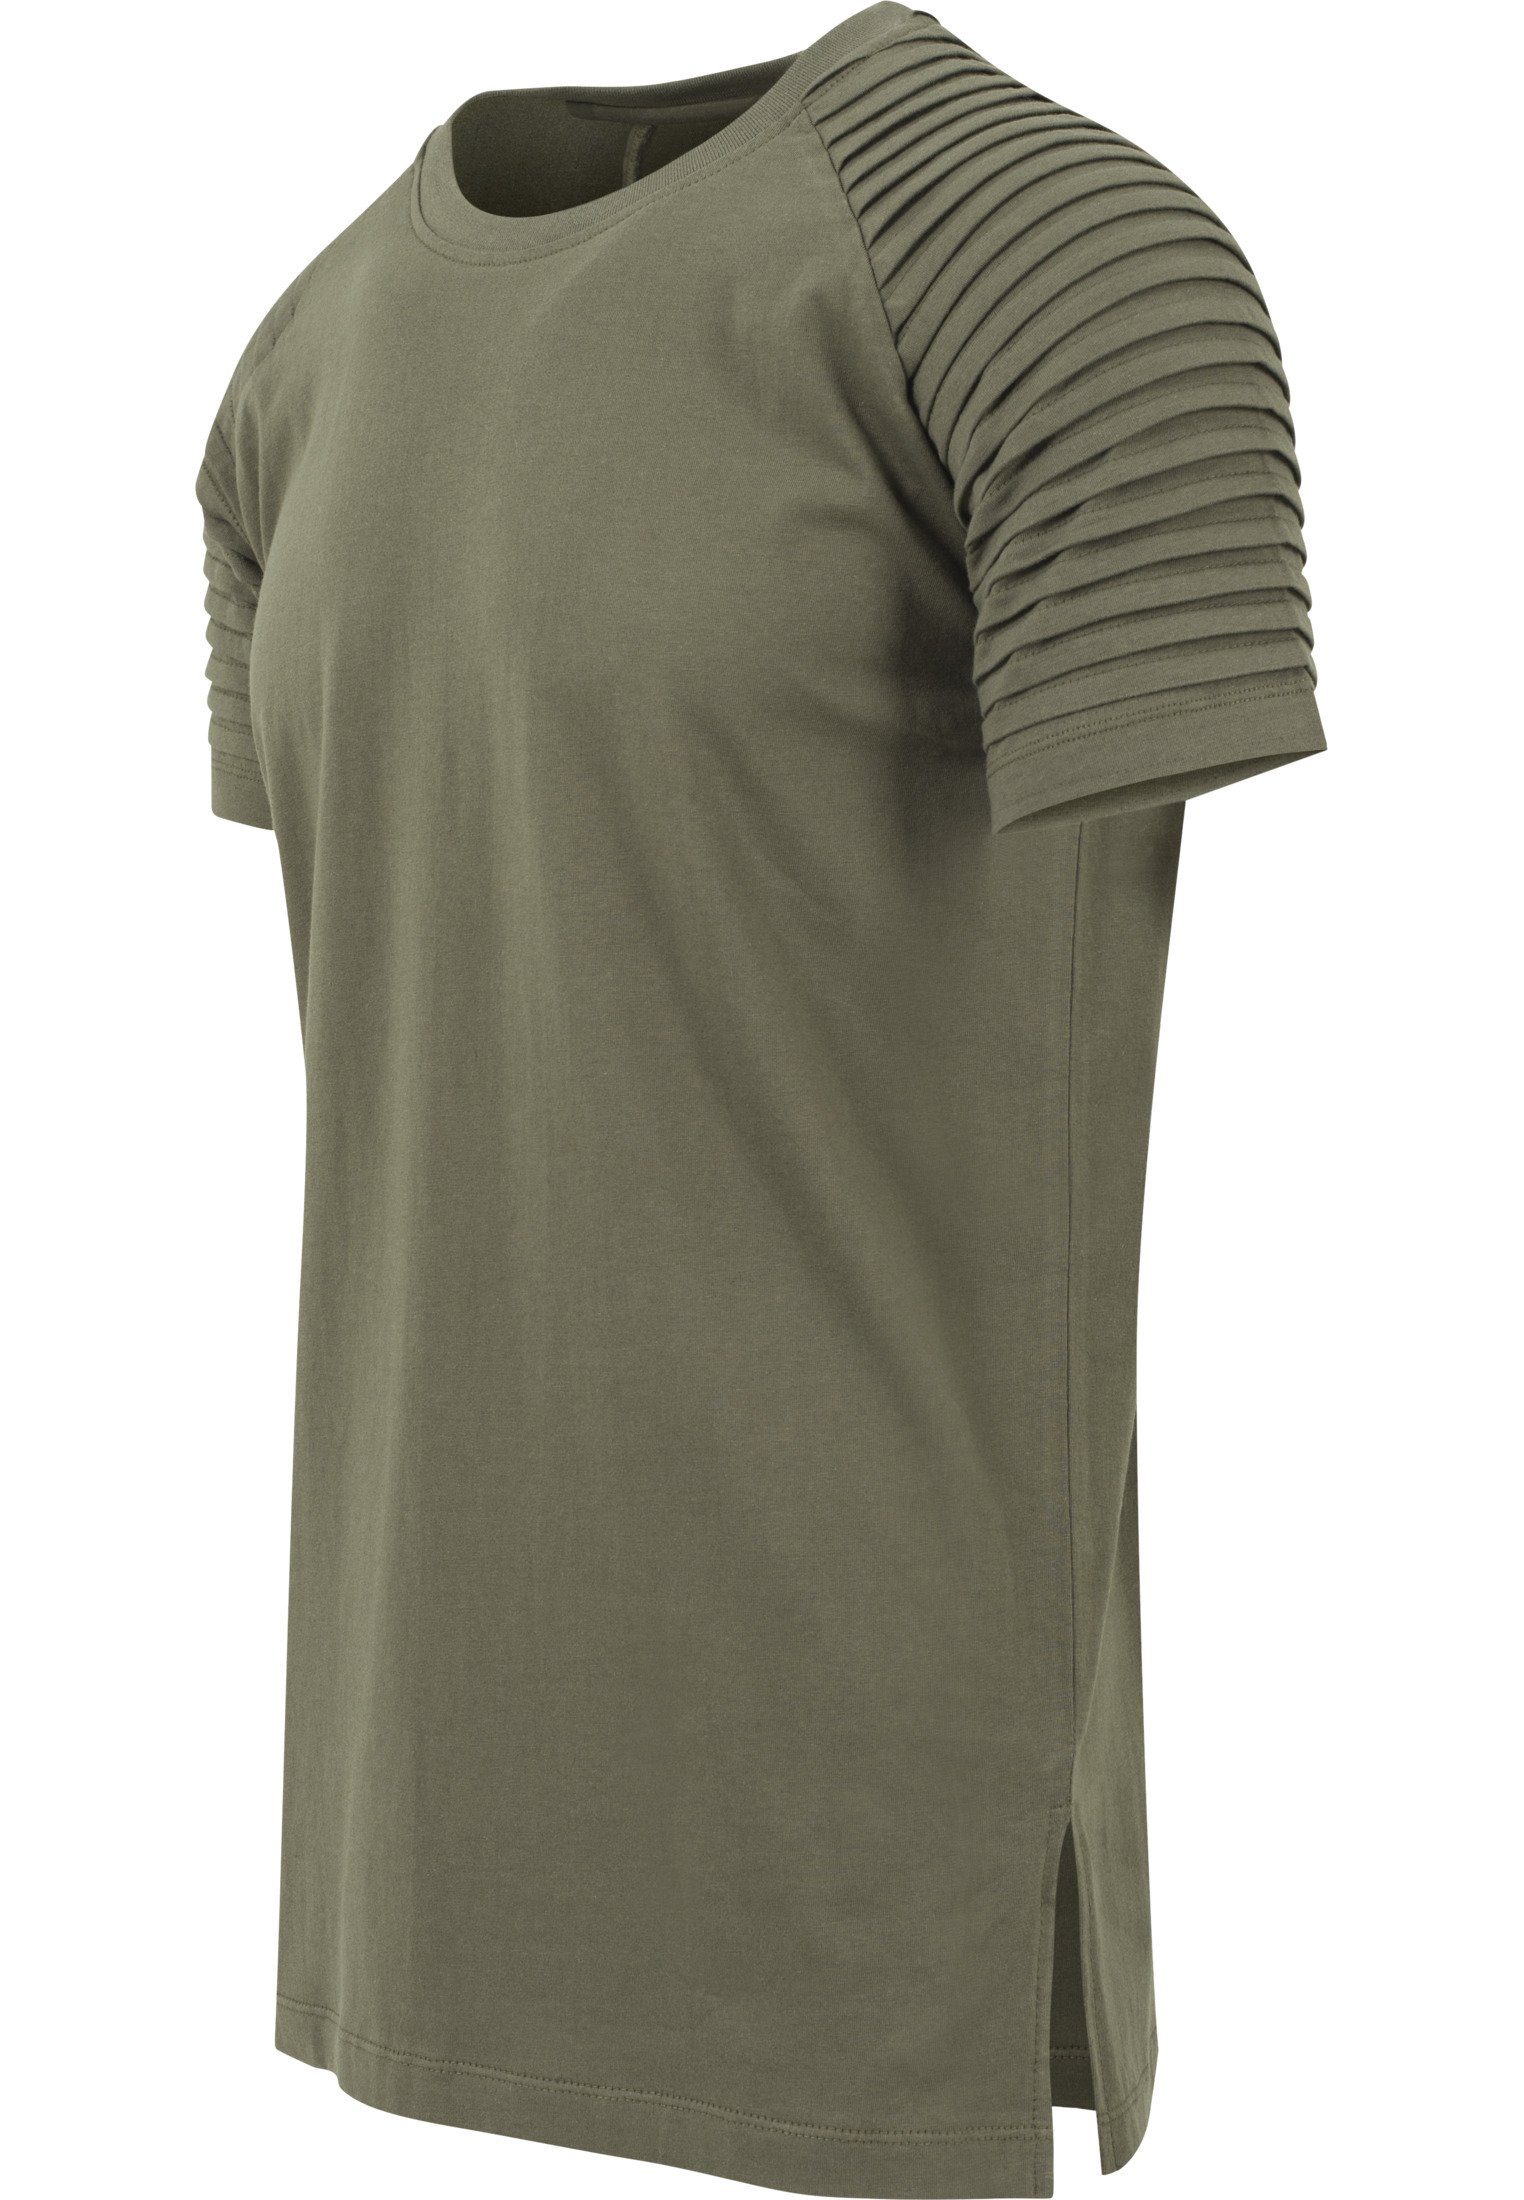 (1-tlg) T-Shirt CLASSICS URBAN Pleat Raglan olive T-Shirt Tee